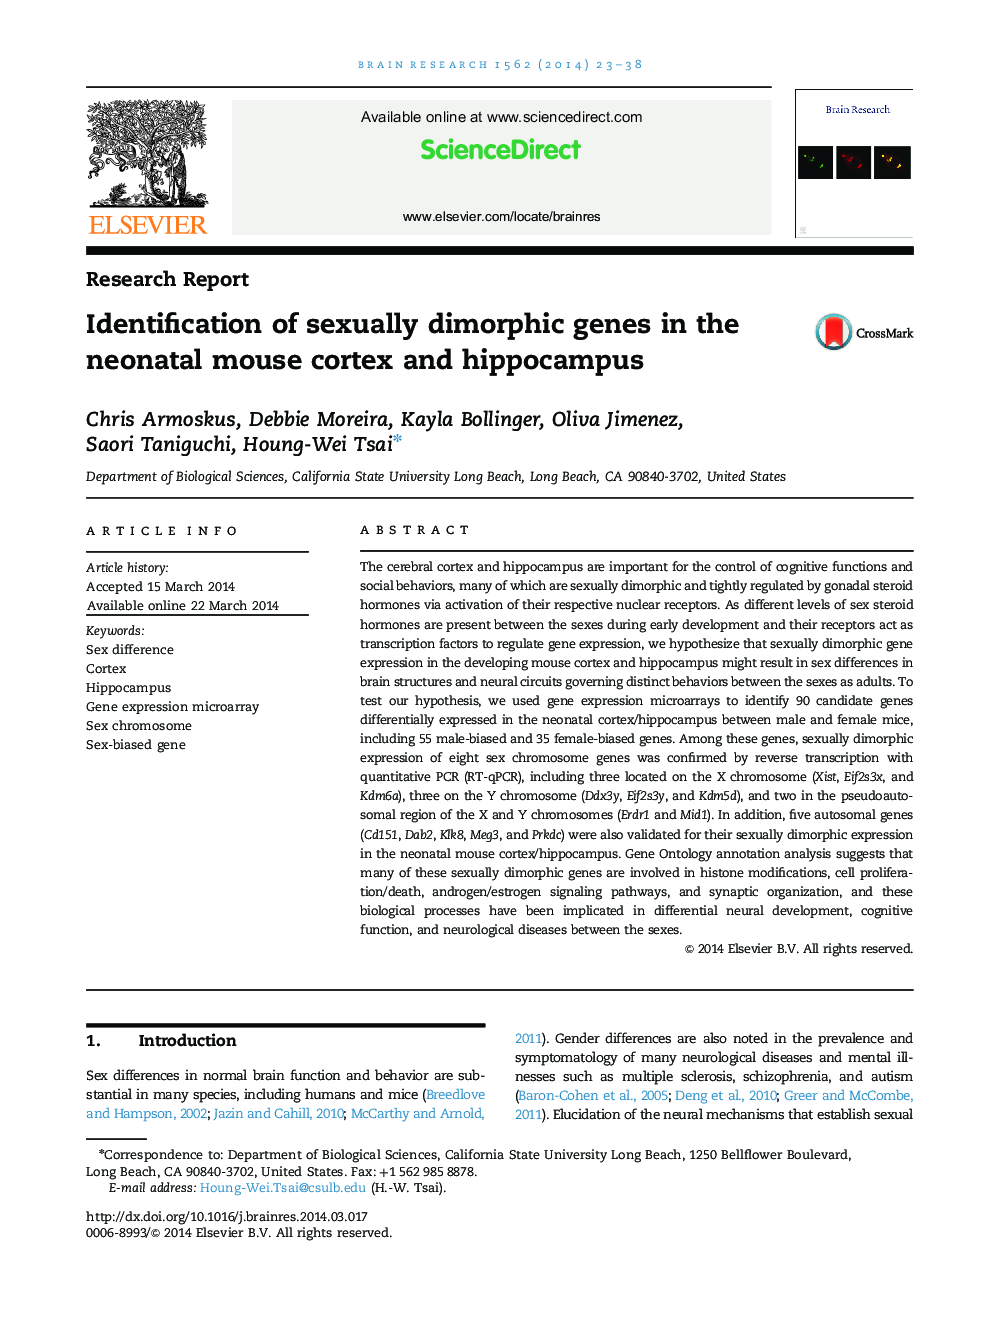 شناسایی ژن های جنسی دیمورفیک در قشر موش نوزادان و هیپوکامپ 